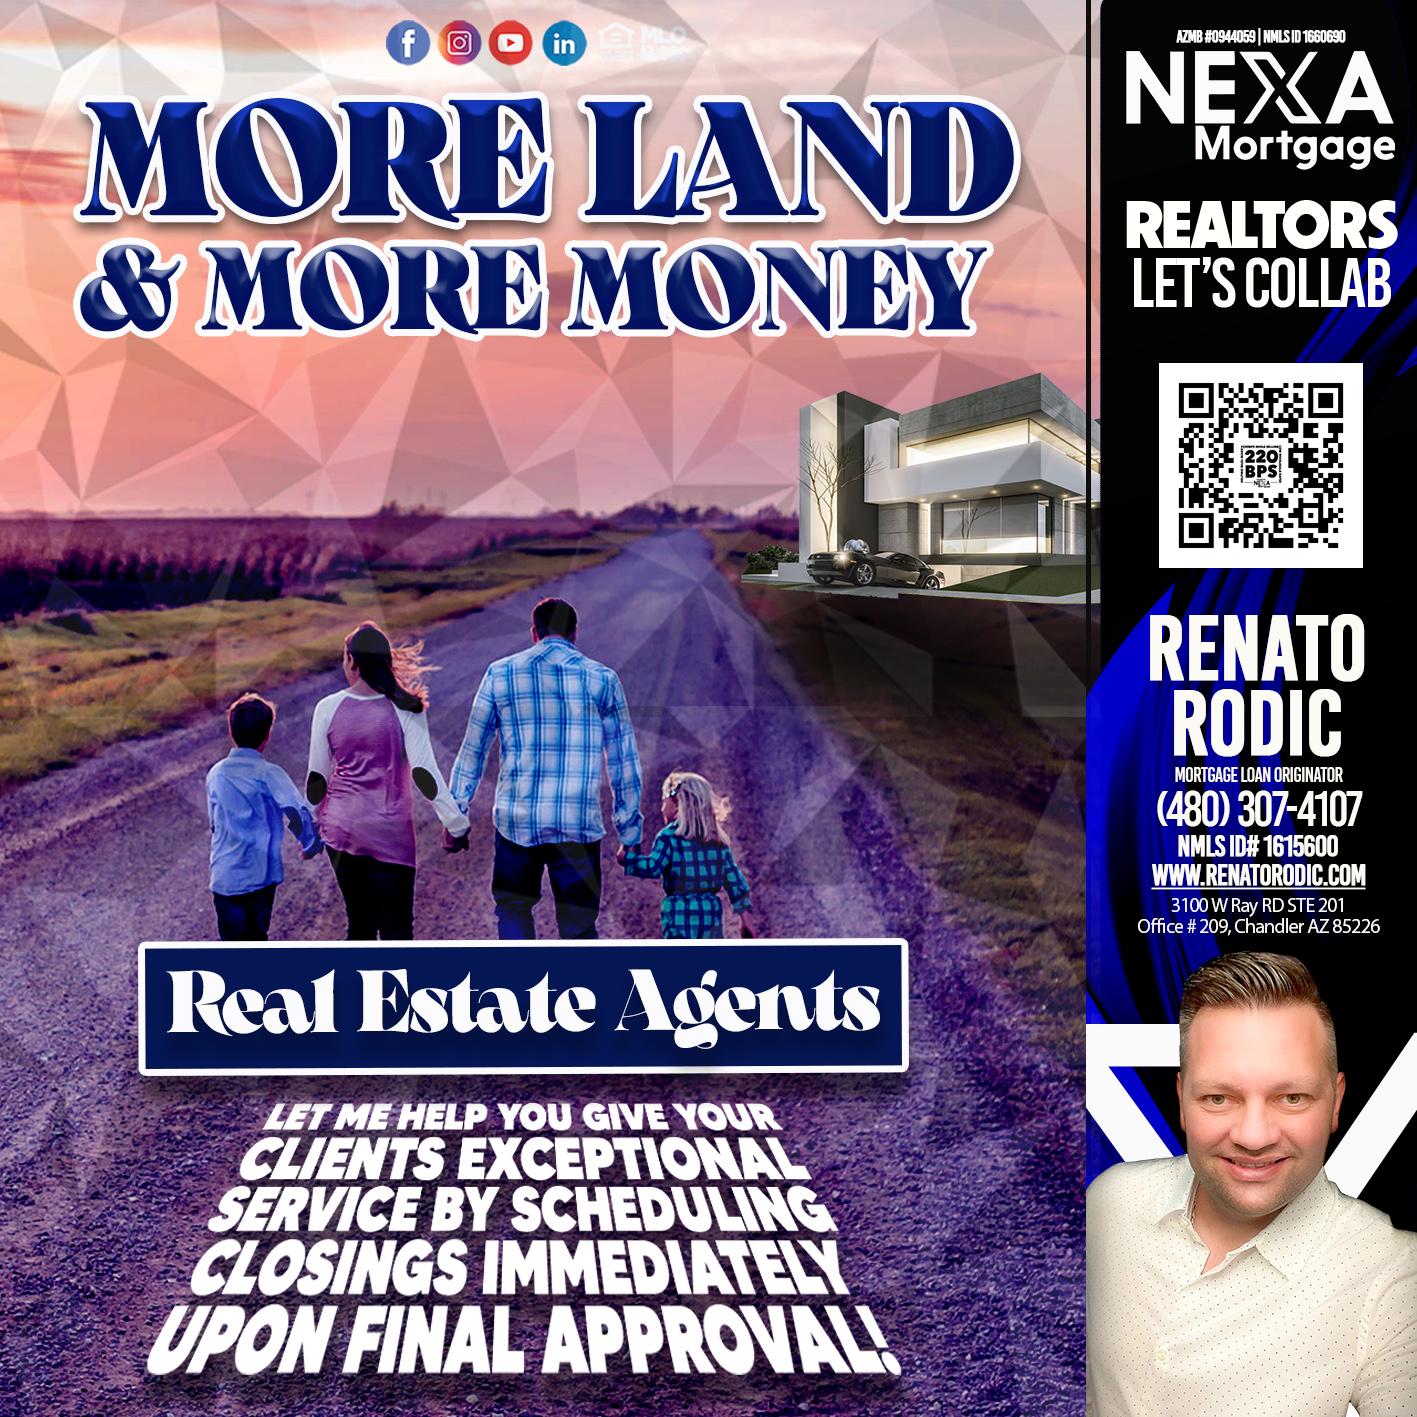 MORE LAND - Renato Rodic -Mortgage Loan Originator